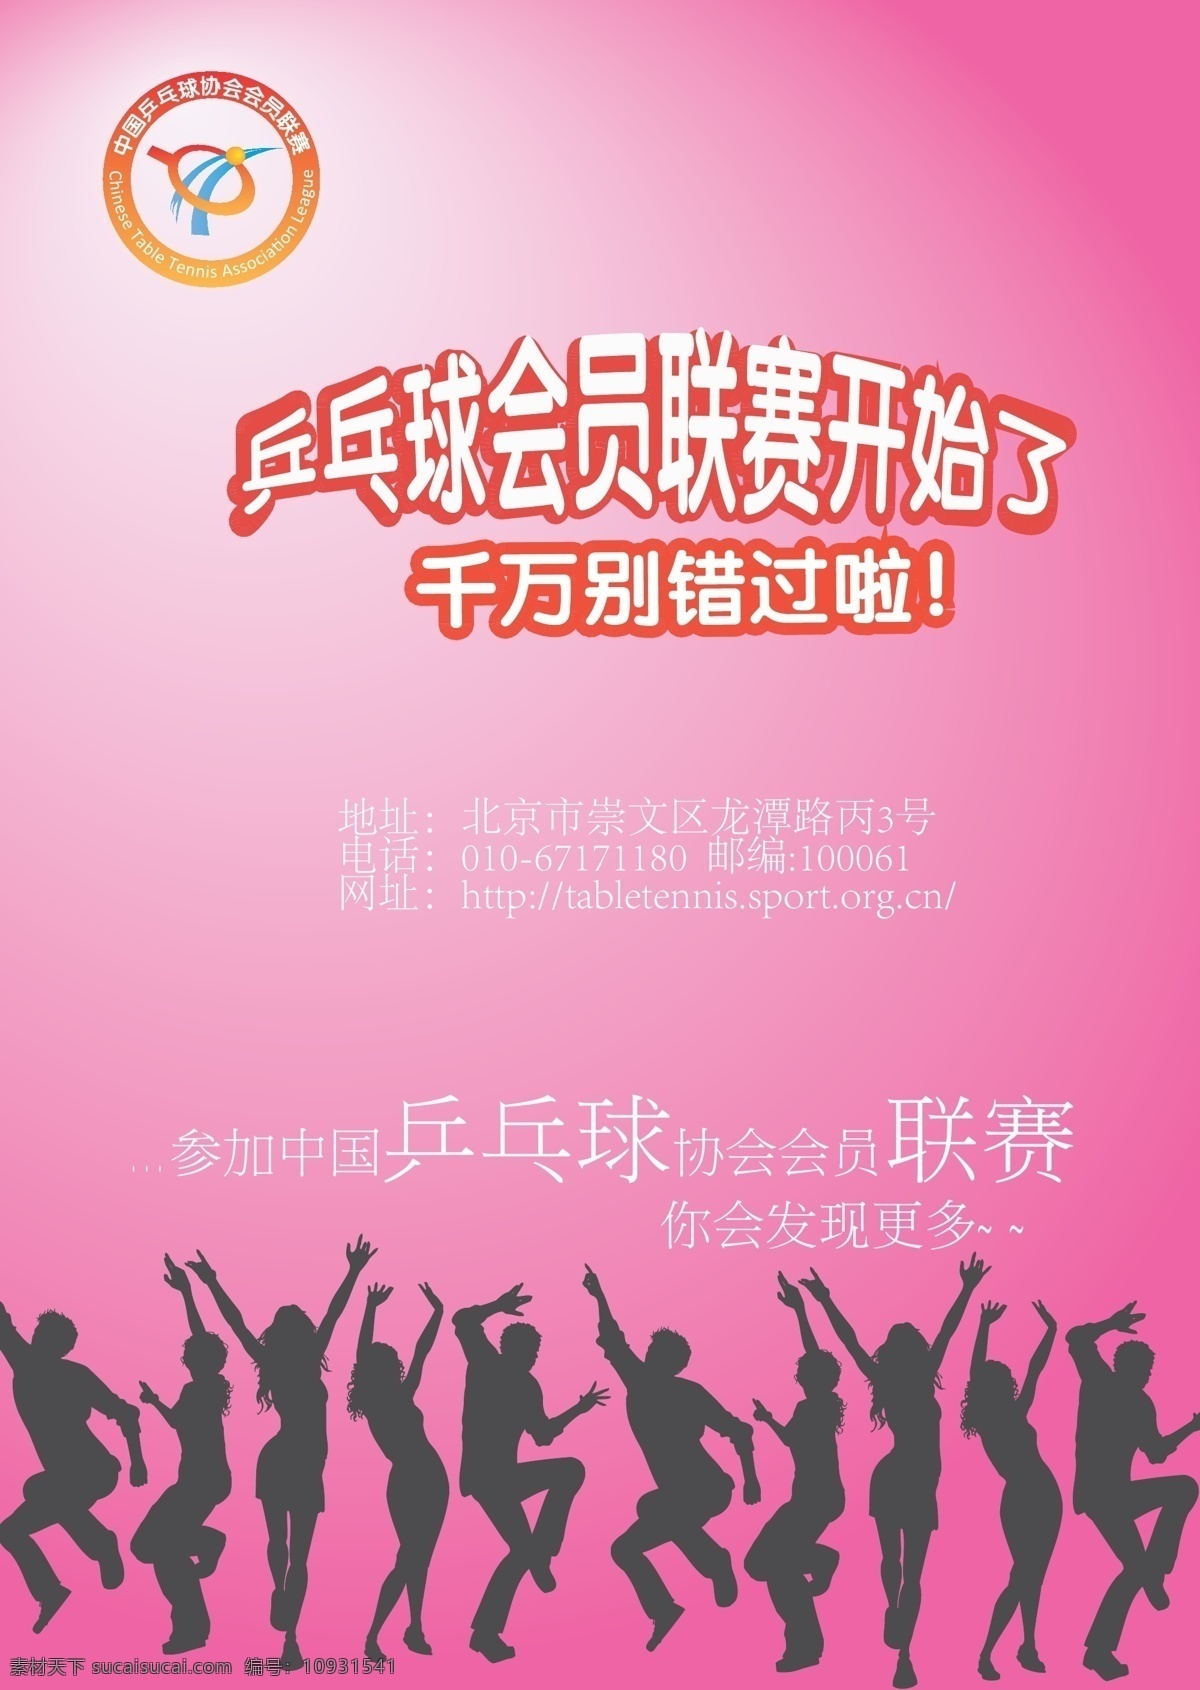 会员 联赛 乒乓球 海报 活动 宣传 宣传海报 宣传单 彩页 dm